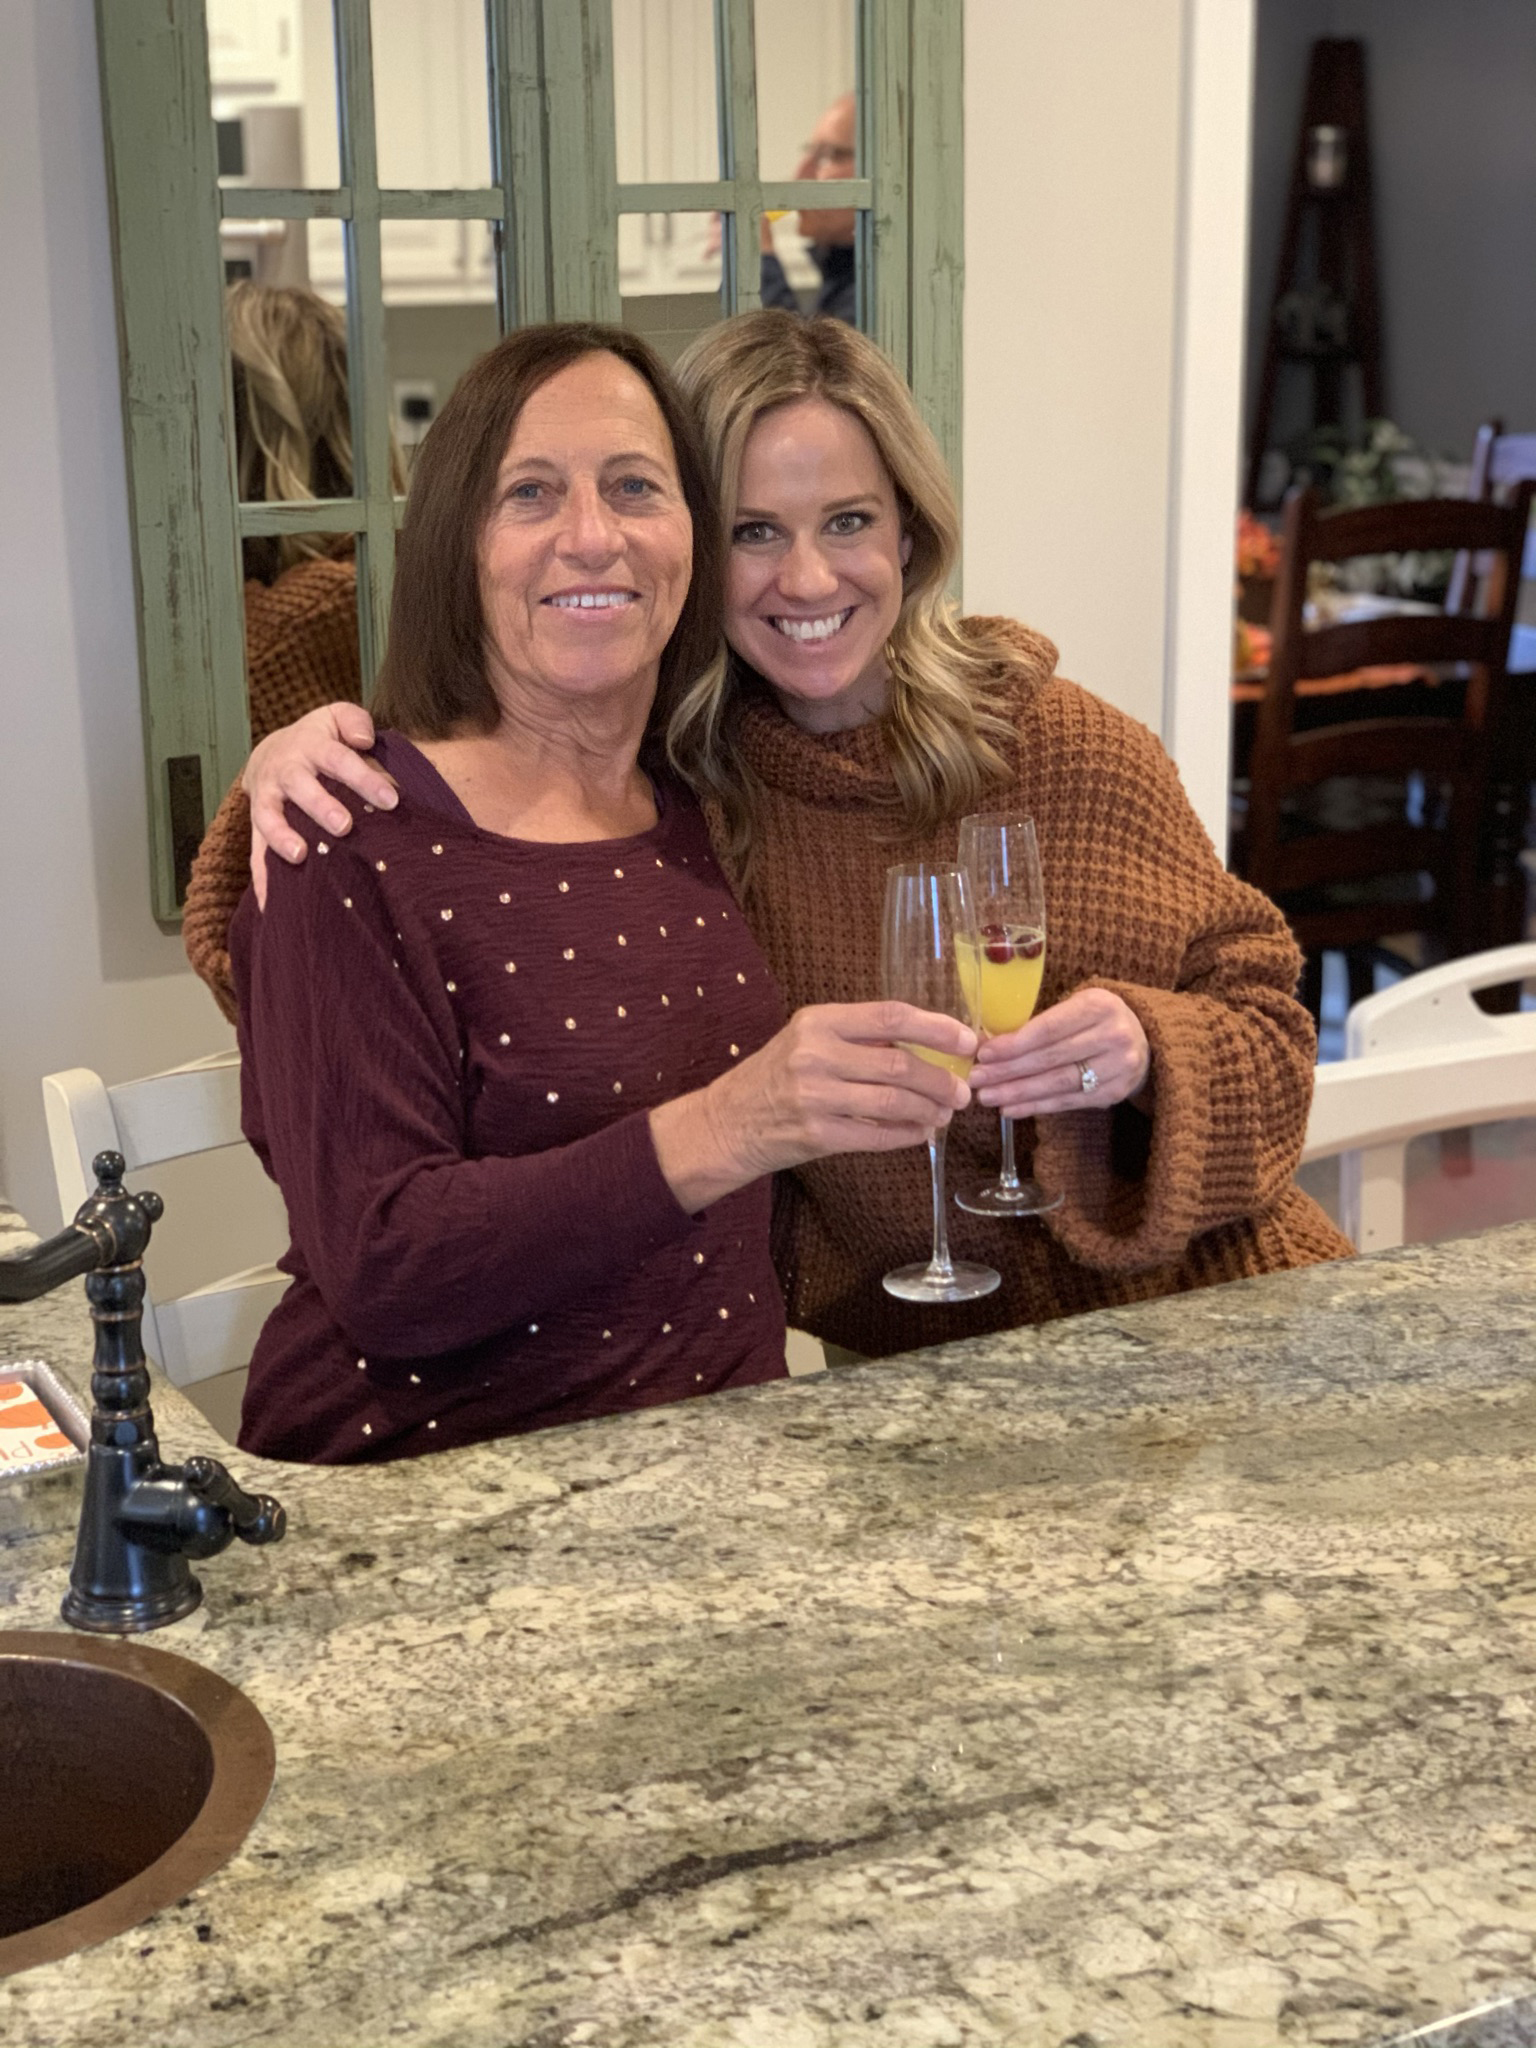 کارول روزن (چپ) و دخترش لیندسی موری (راست)، در خانه خود ایستاده اند.  هر کدام یک لیوان به اندازه شامپاین در دست دارند و تشویق می کنند.